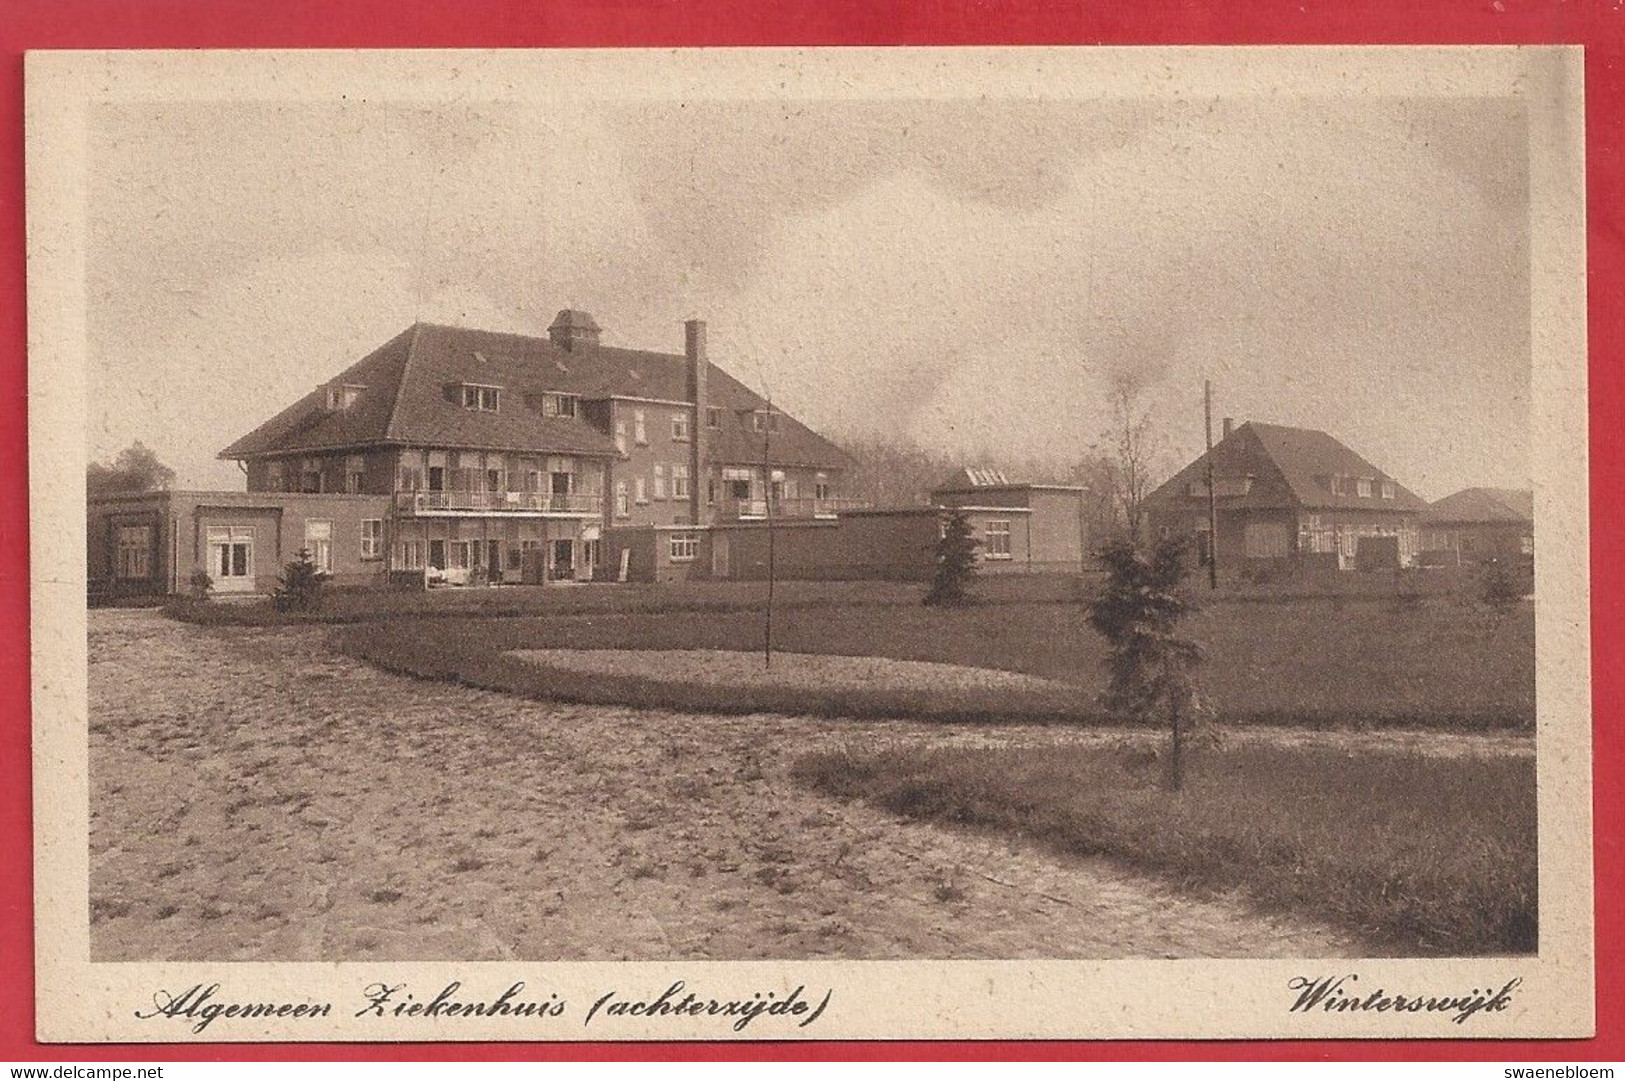 NL.- Winterswijk, Algemeen Ziekenhuis Achterzijde. Uitgave G.J. Albrecht. Foto-Mantel. - Winterswijk